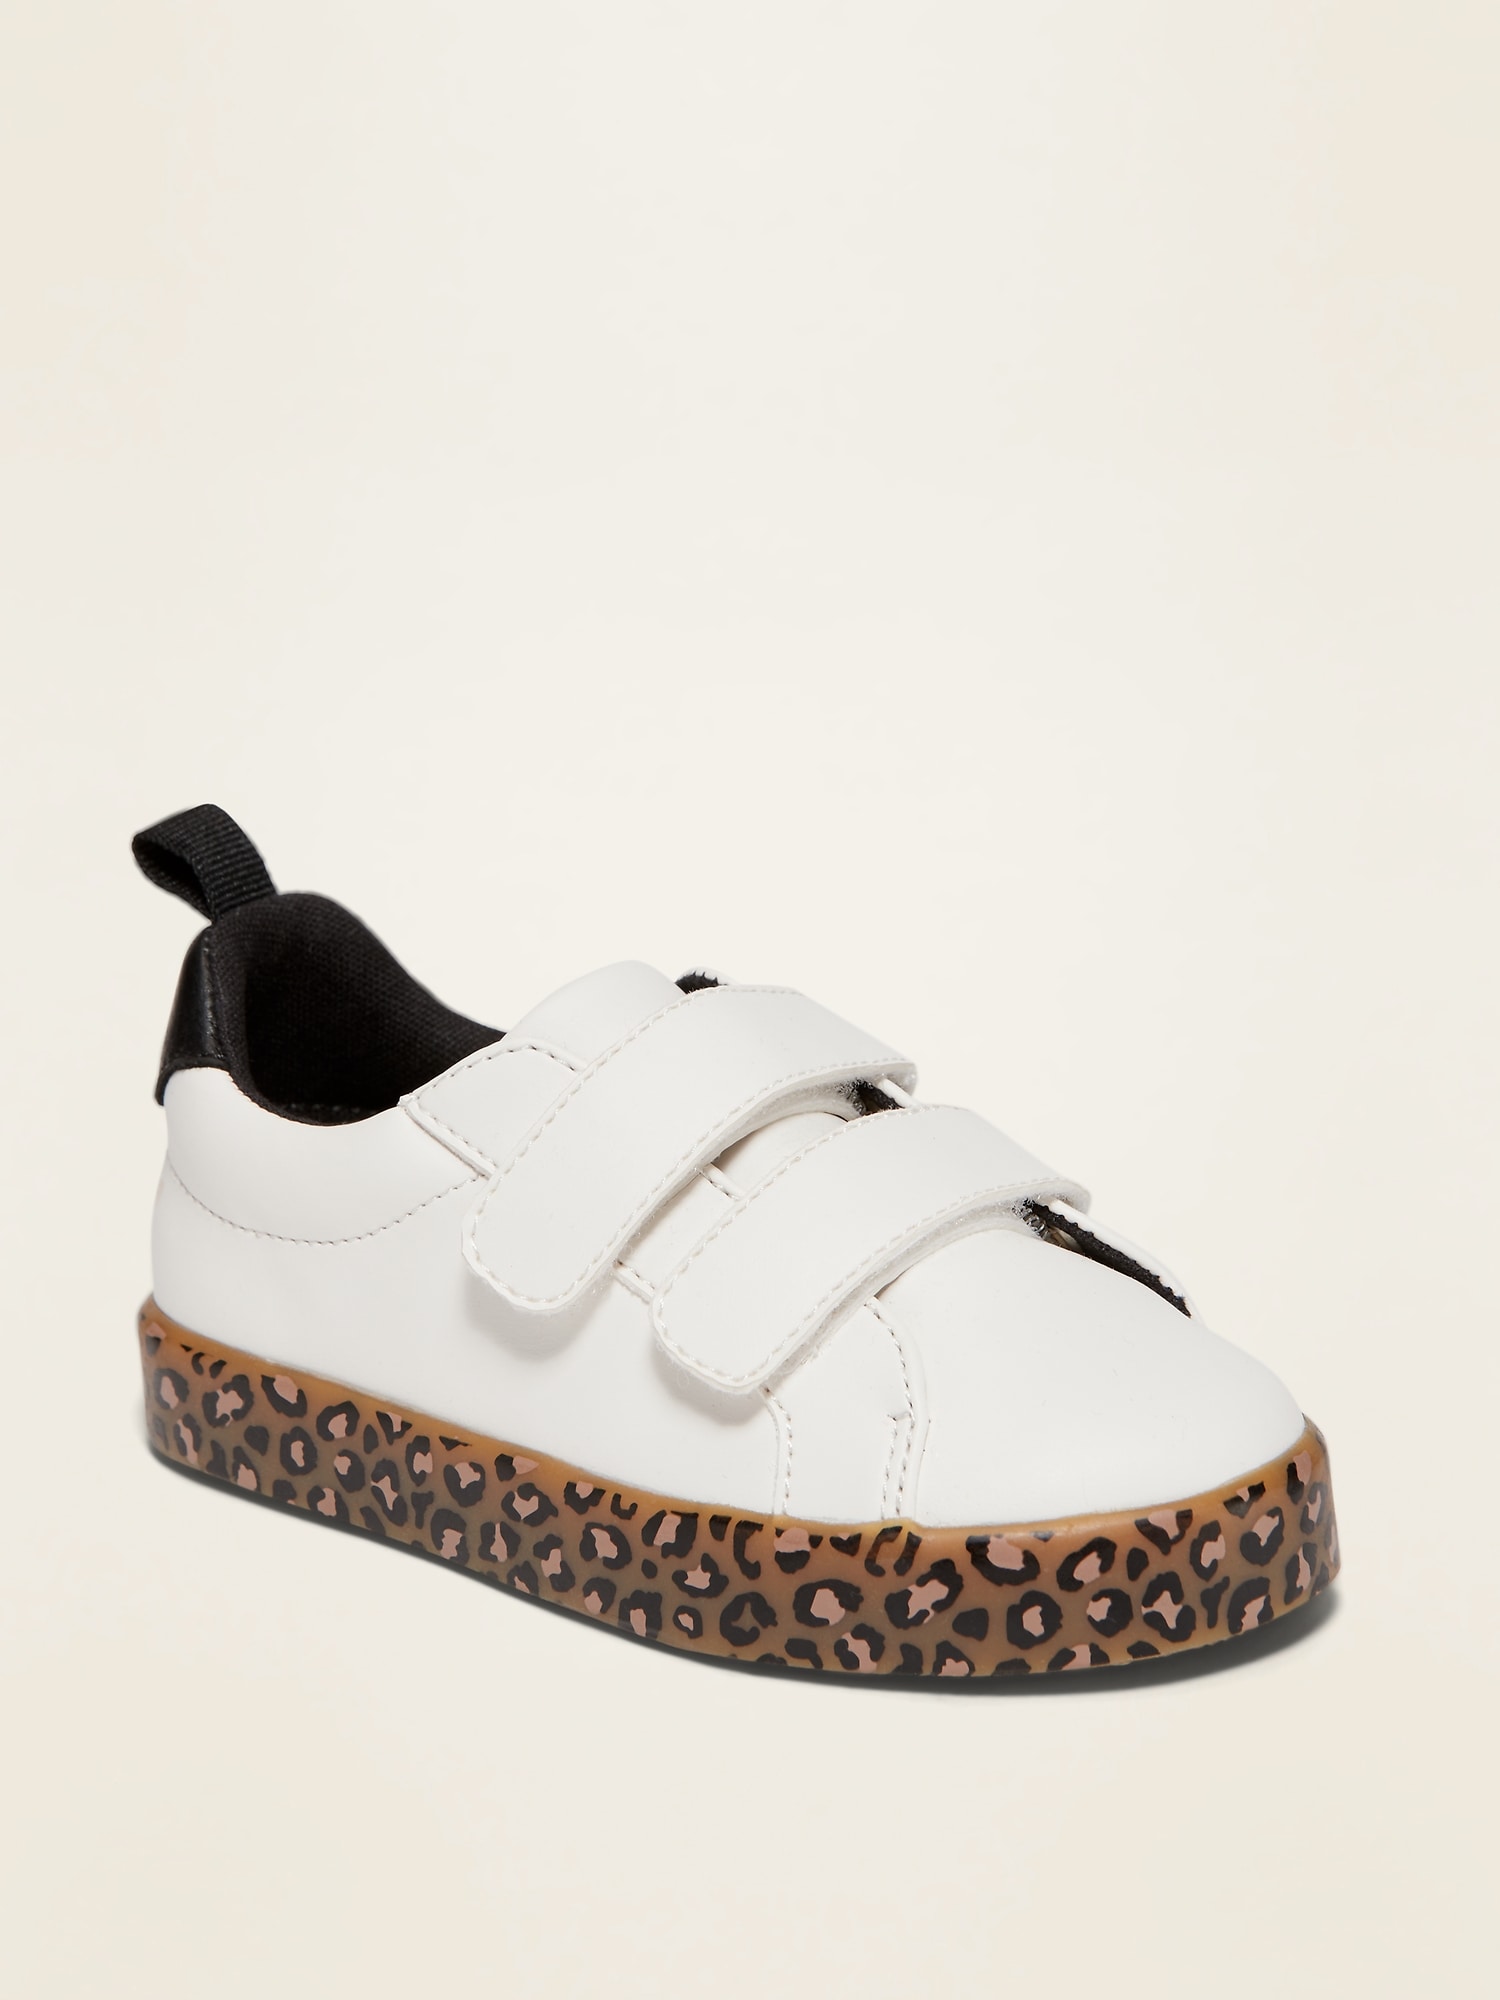 gap leopard sneakers